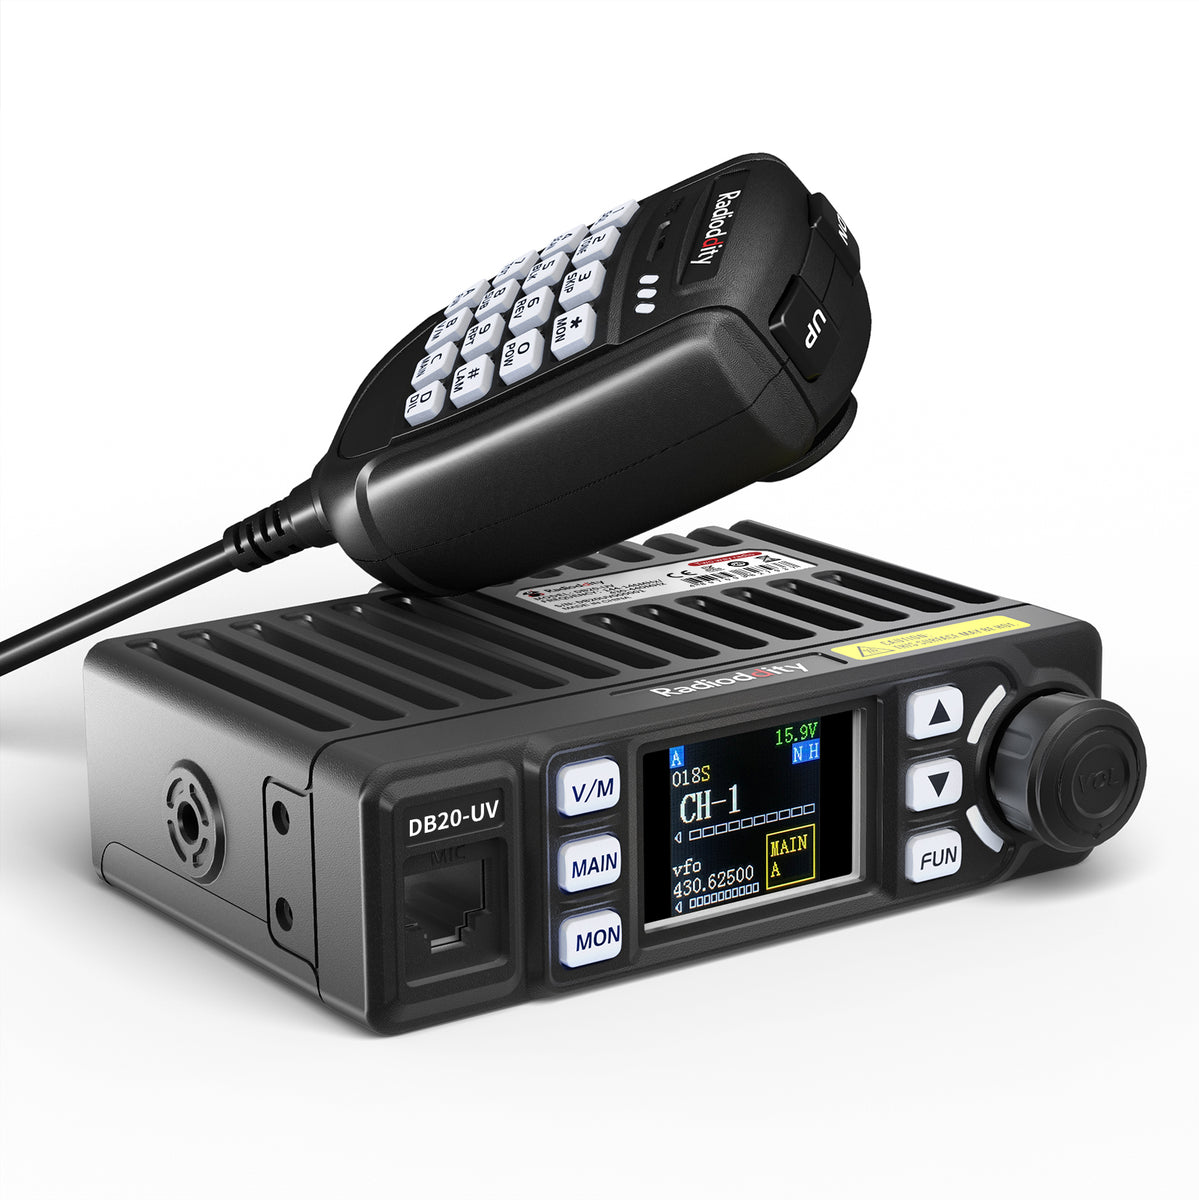 Radioddity DB20-UV Mobile Radio Dual Band 20W Display Sync VOX